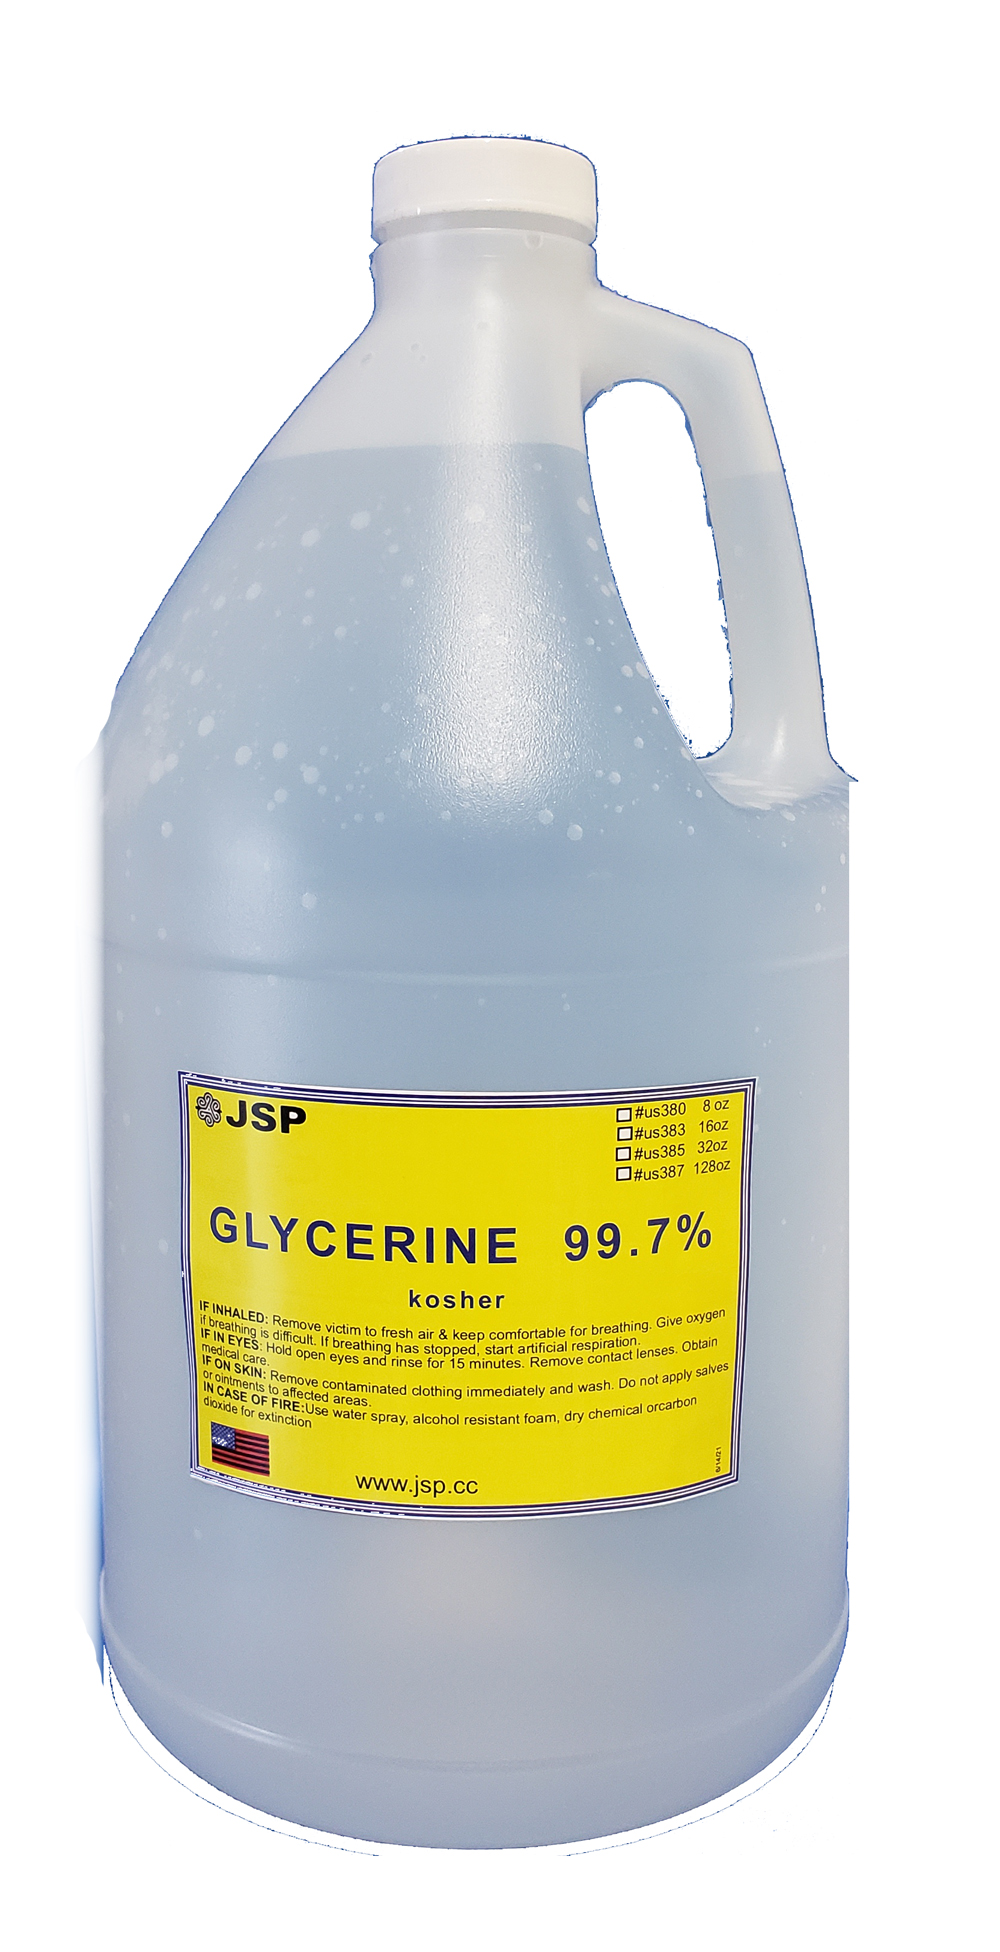 GLYCERINE/GLYCEROL 99.7% 128 oz